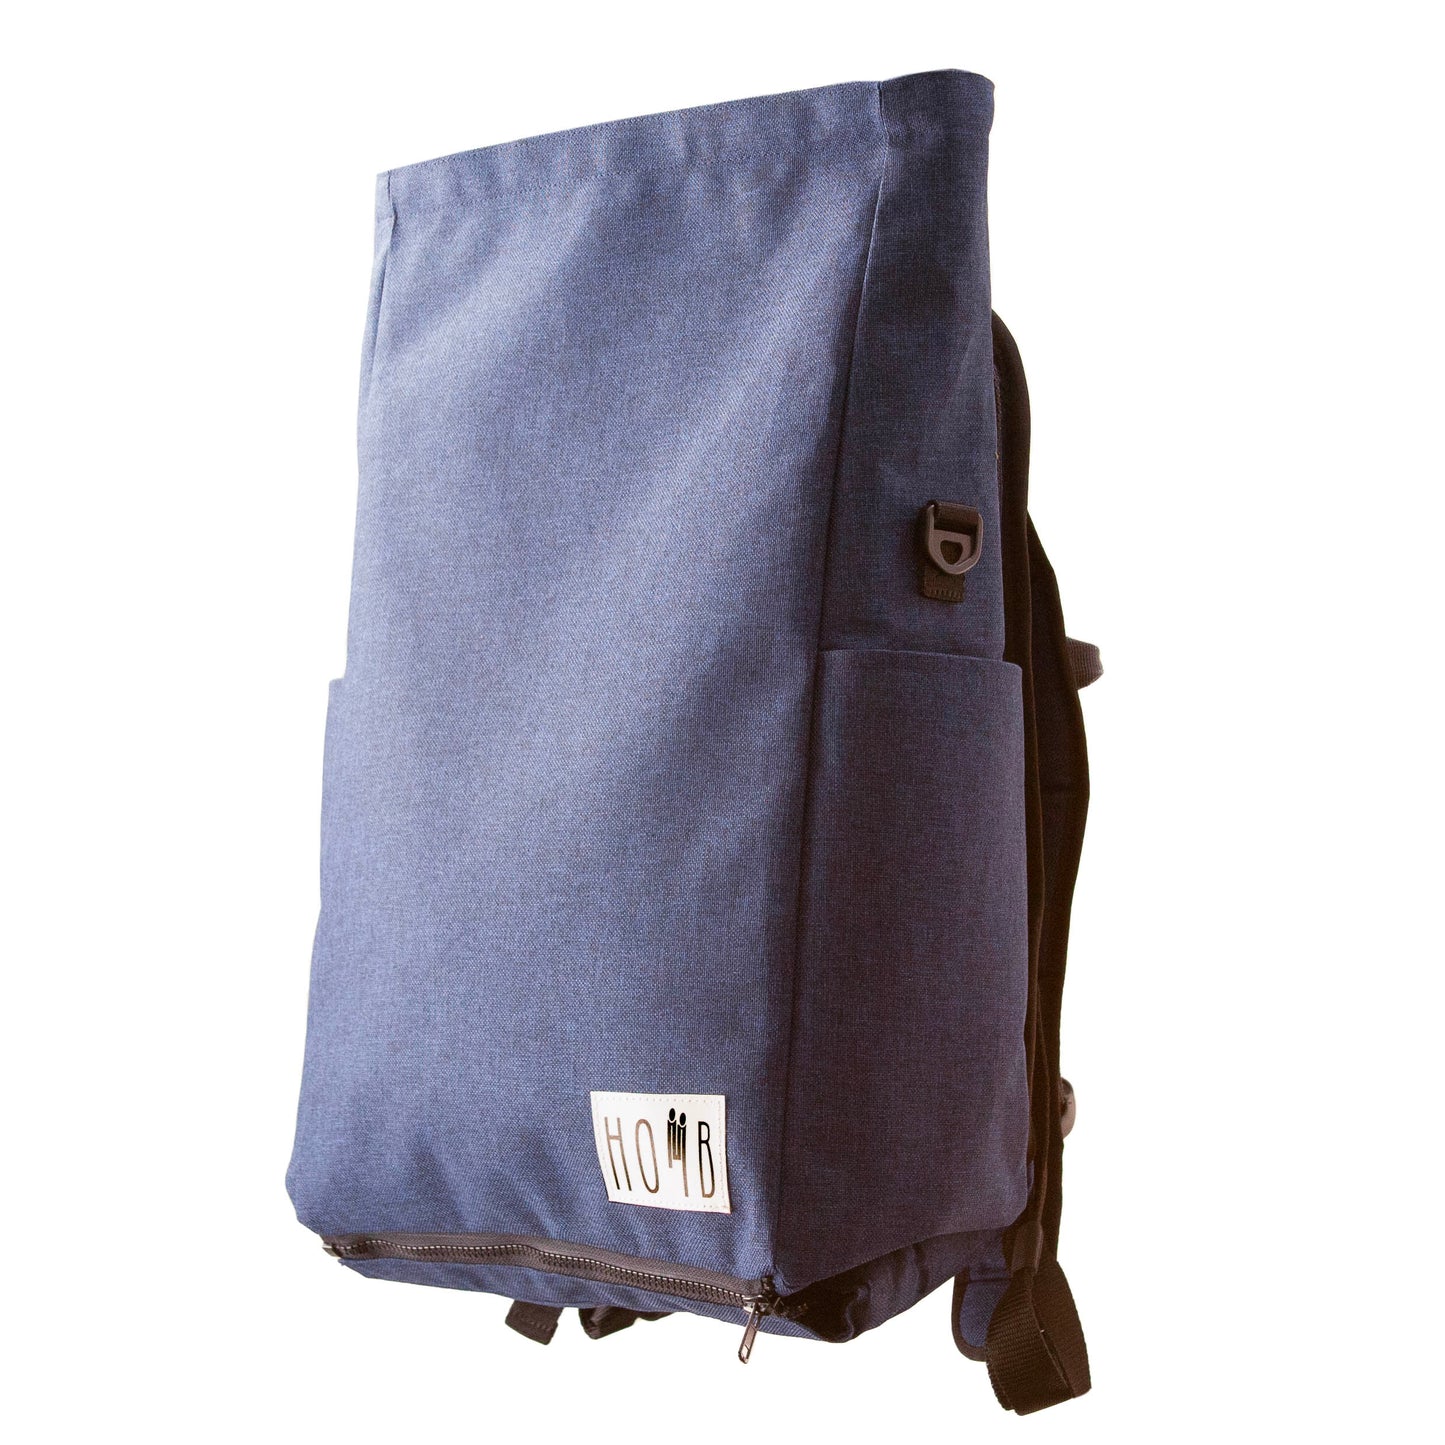 HOMB - Rucksack mit Rückentrage - Kindertrage ab 2 Jahre bis 25 kg